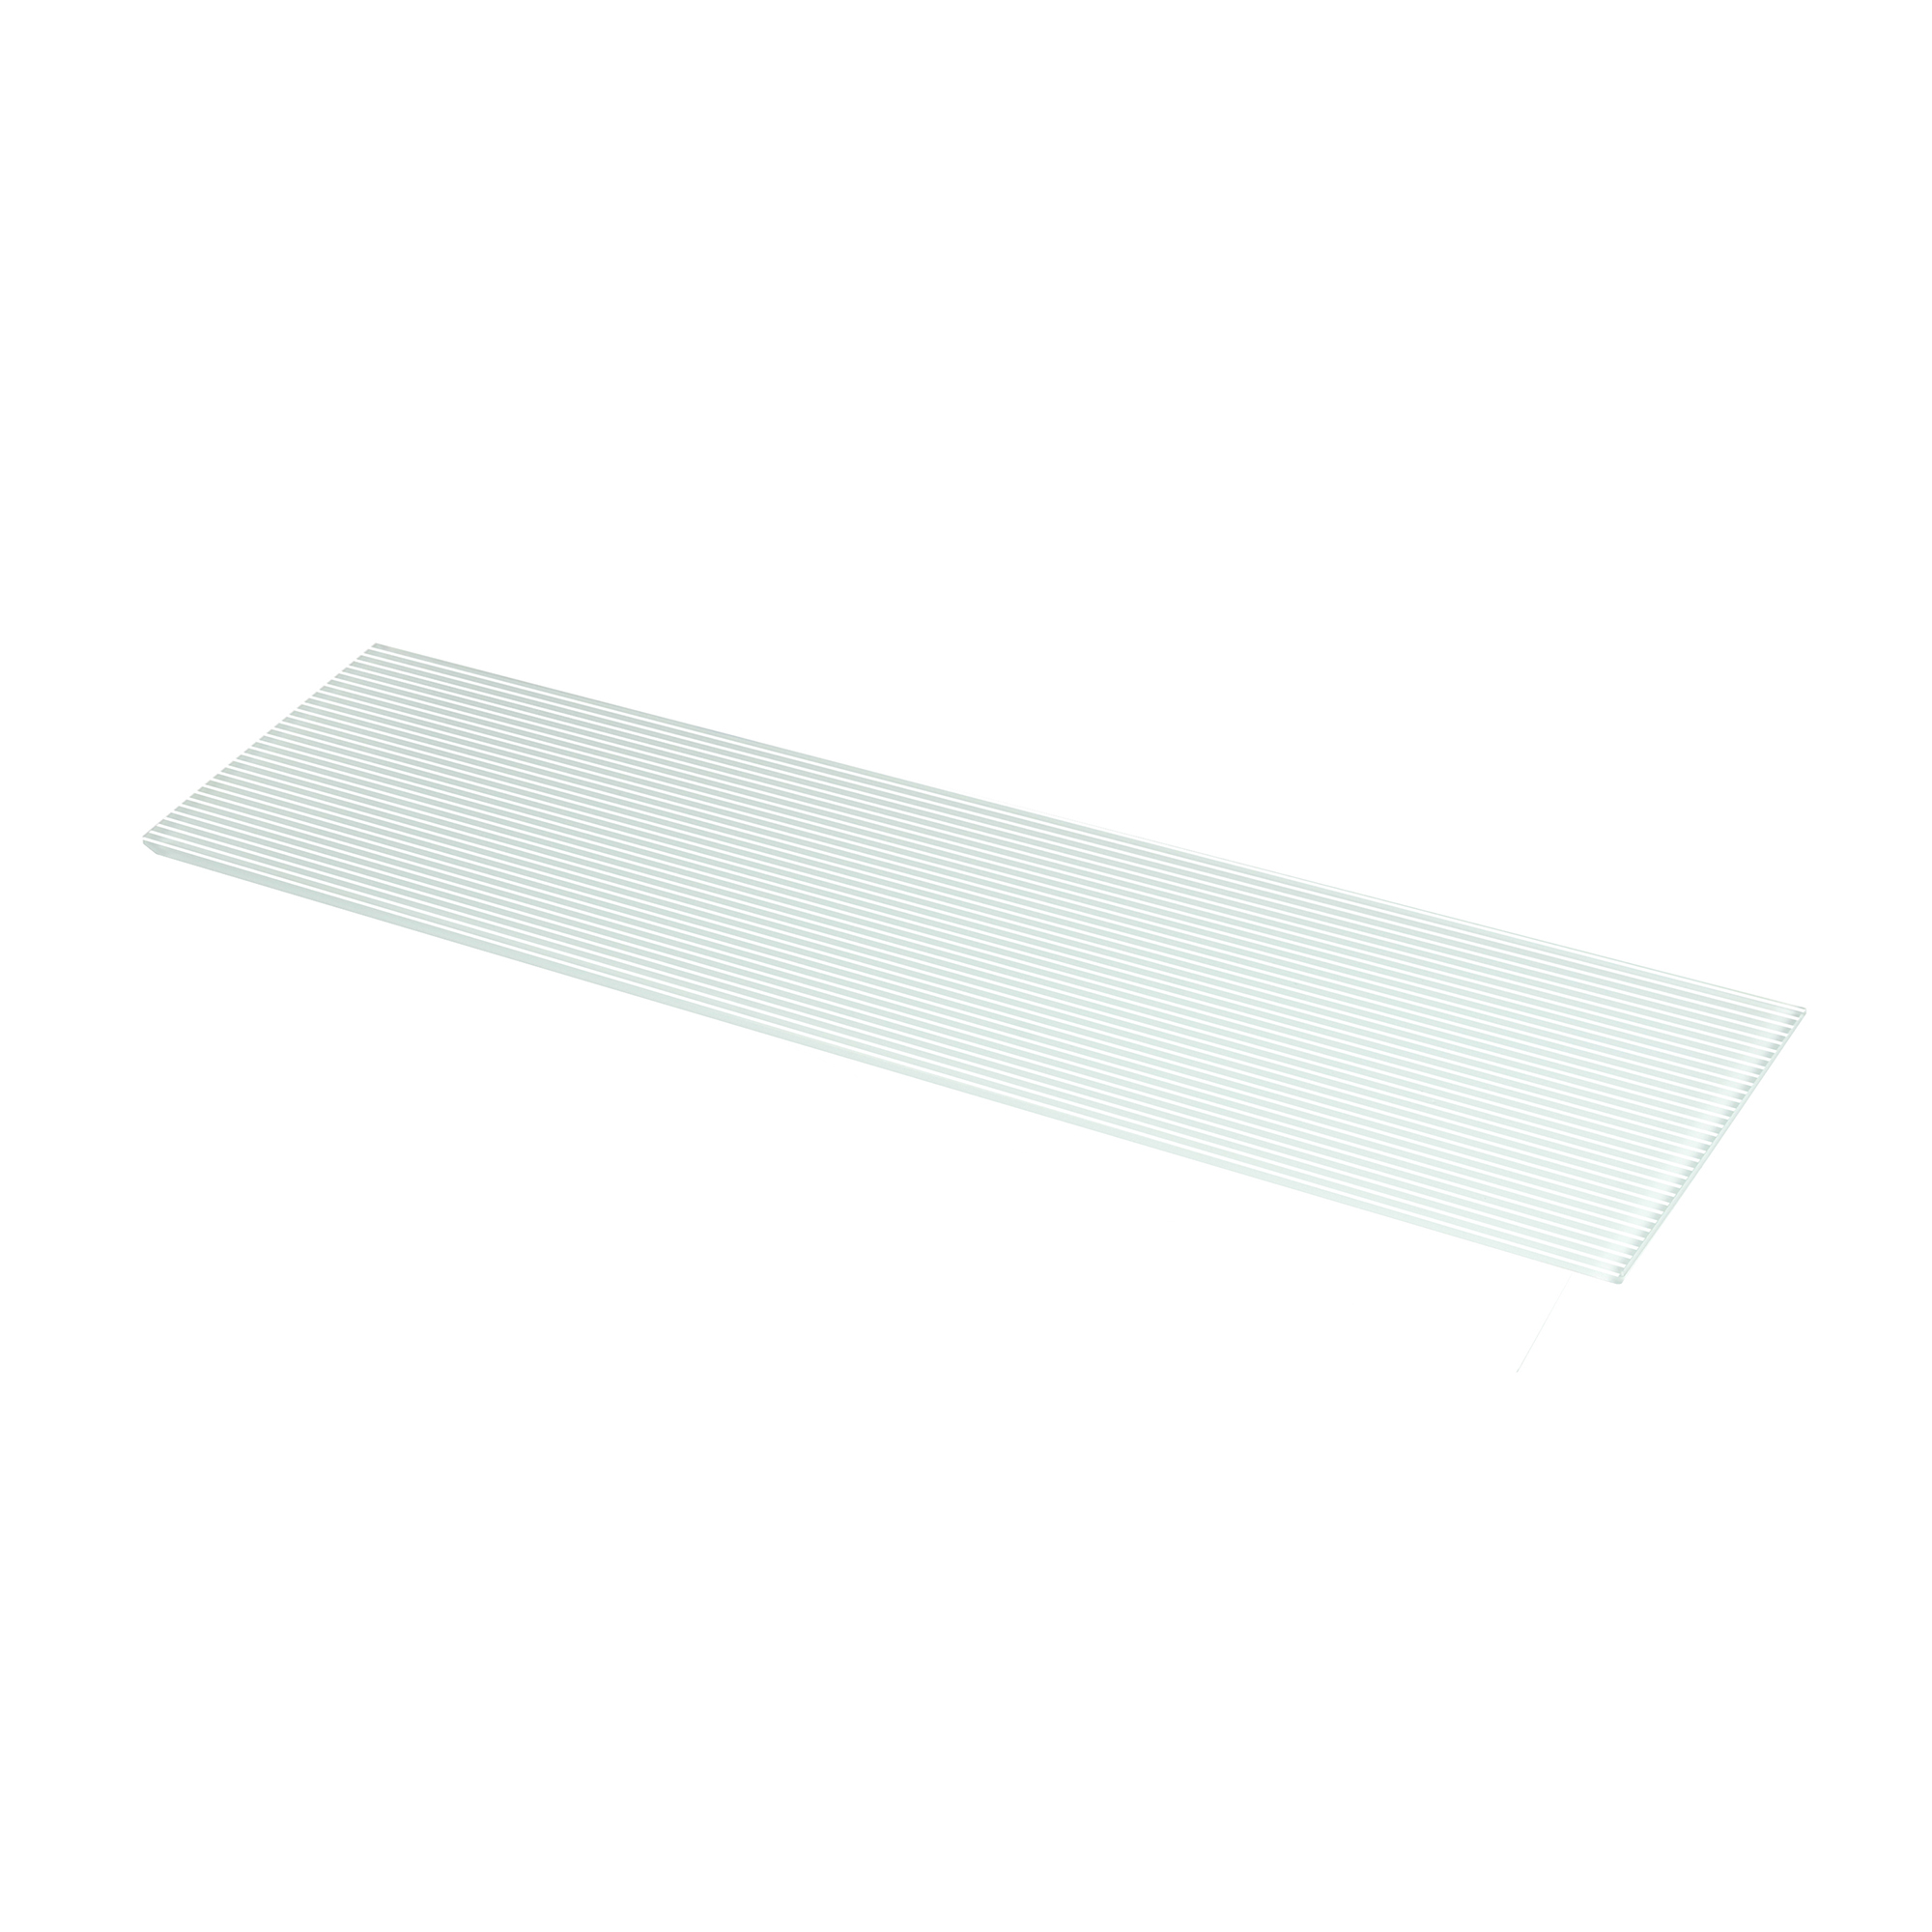 Étagère rectangulaire en verre Finition à rayures blanches | Mesures 600*6*150mm | Épaisseur de l'étagère : 6 mm | 1 unité